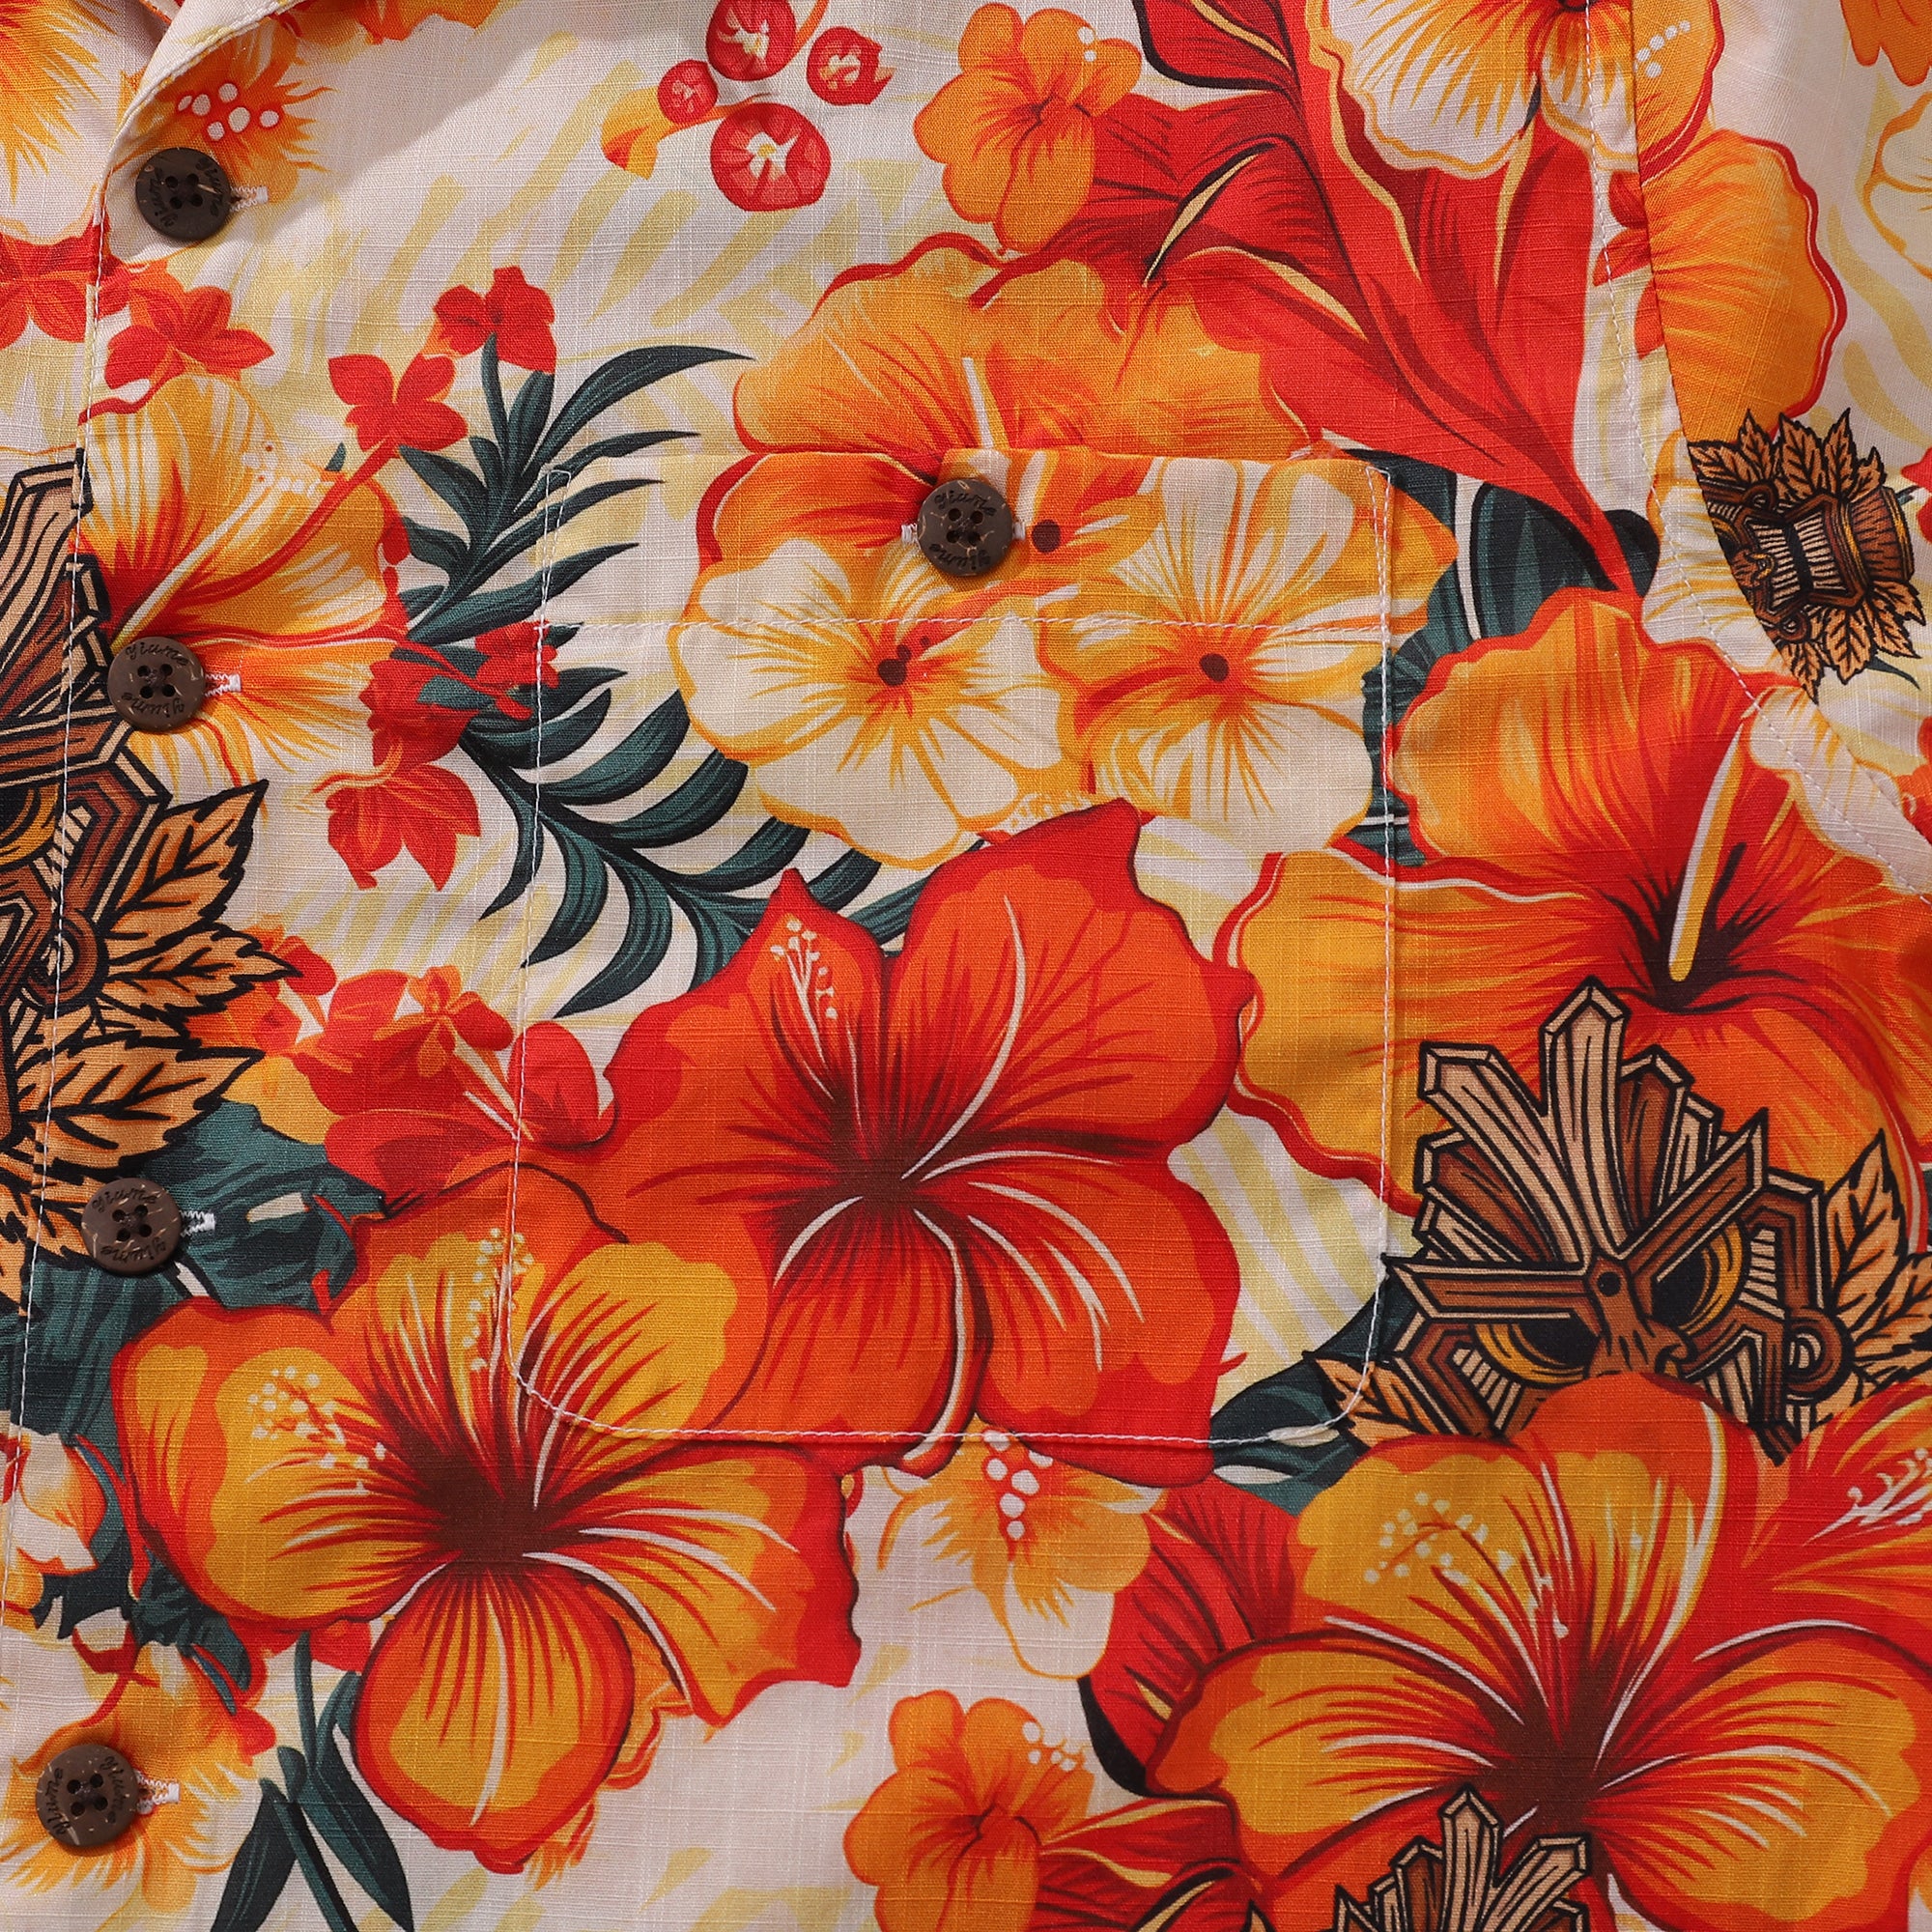 Tiki Hawaiian Shirt For Men Designer Floral Shirt Camp Collar 100% Cotton